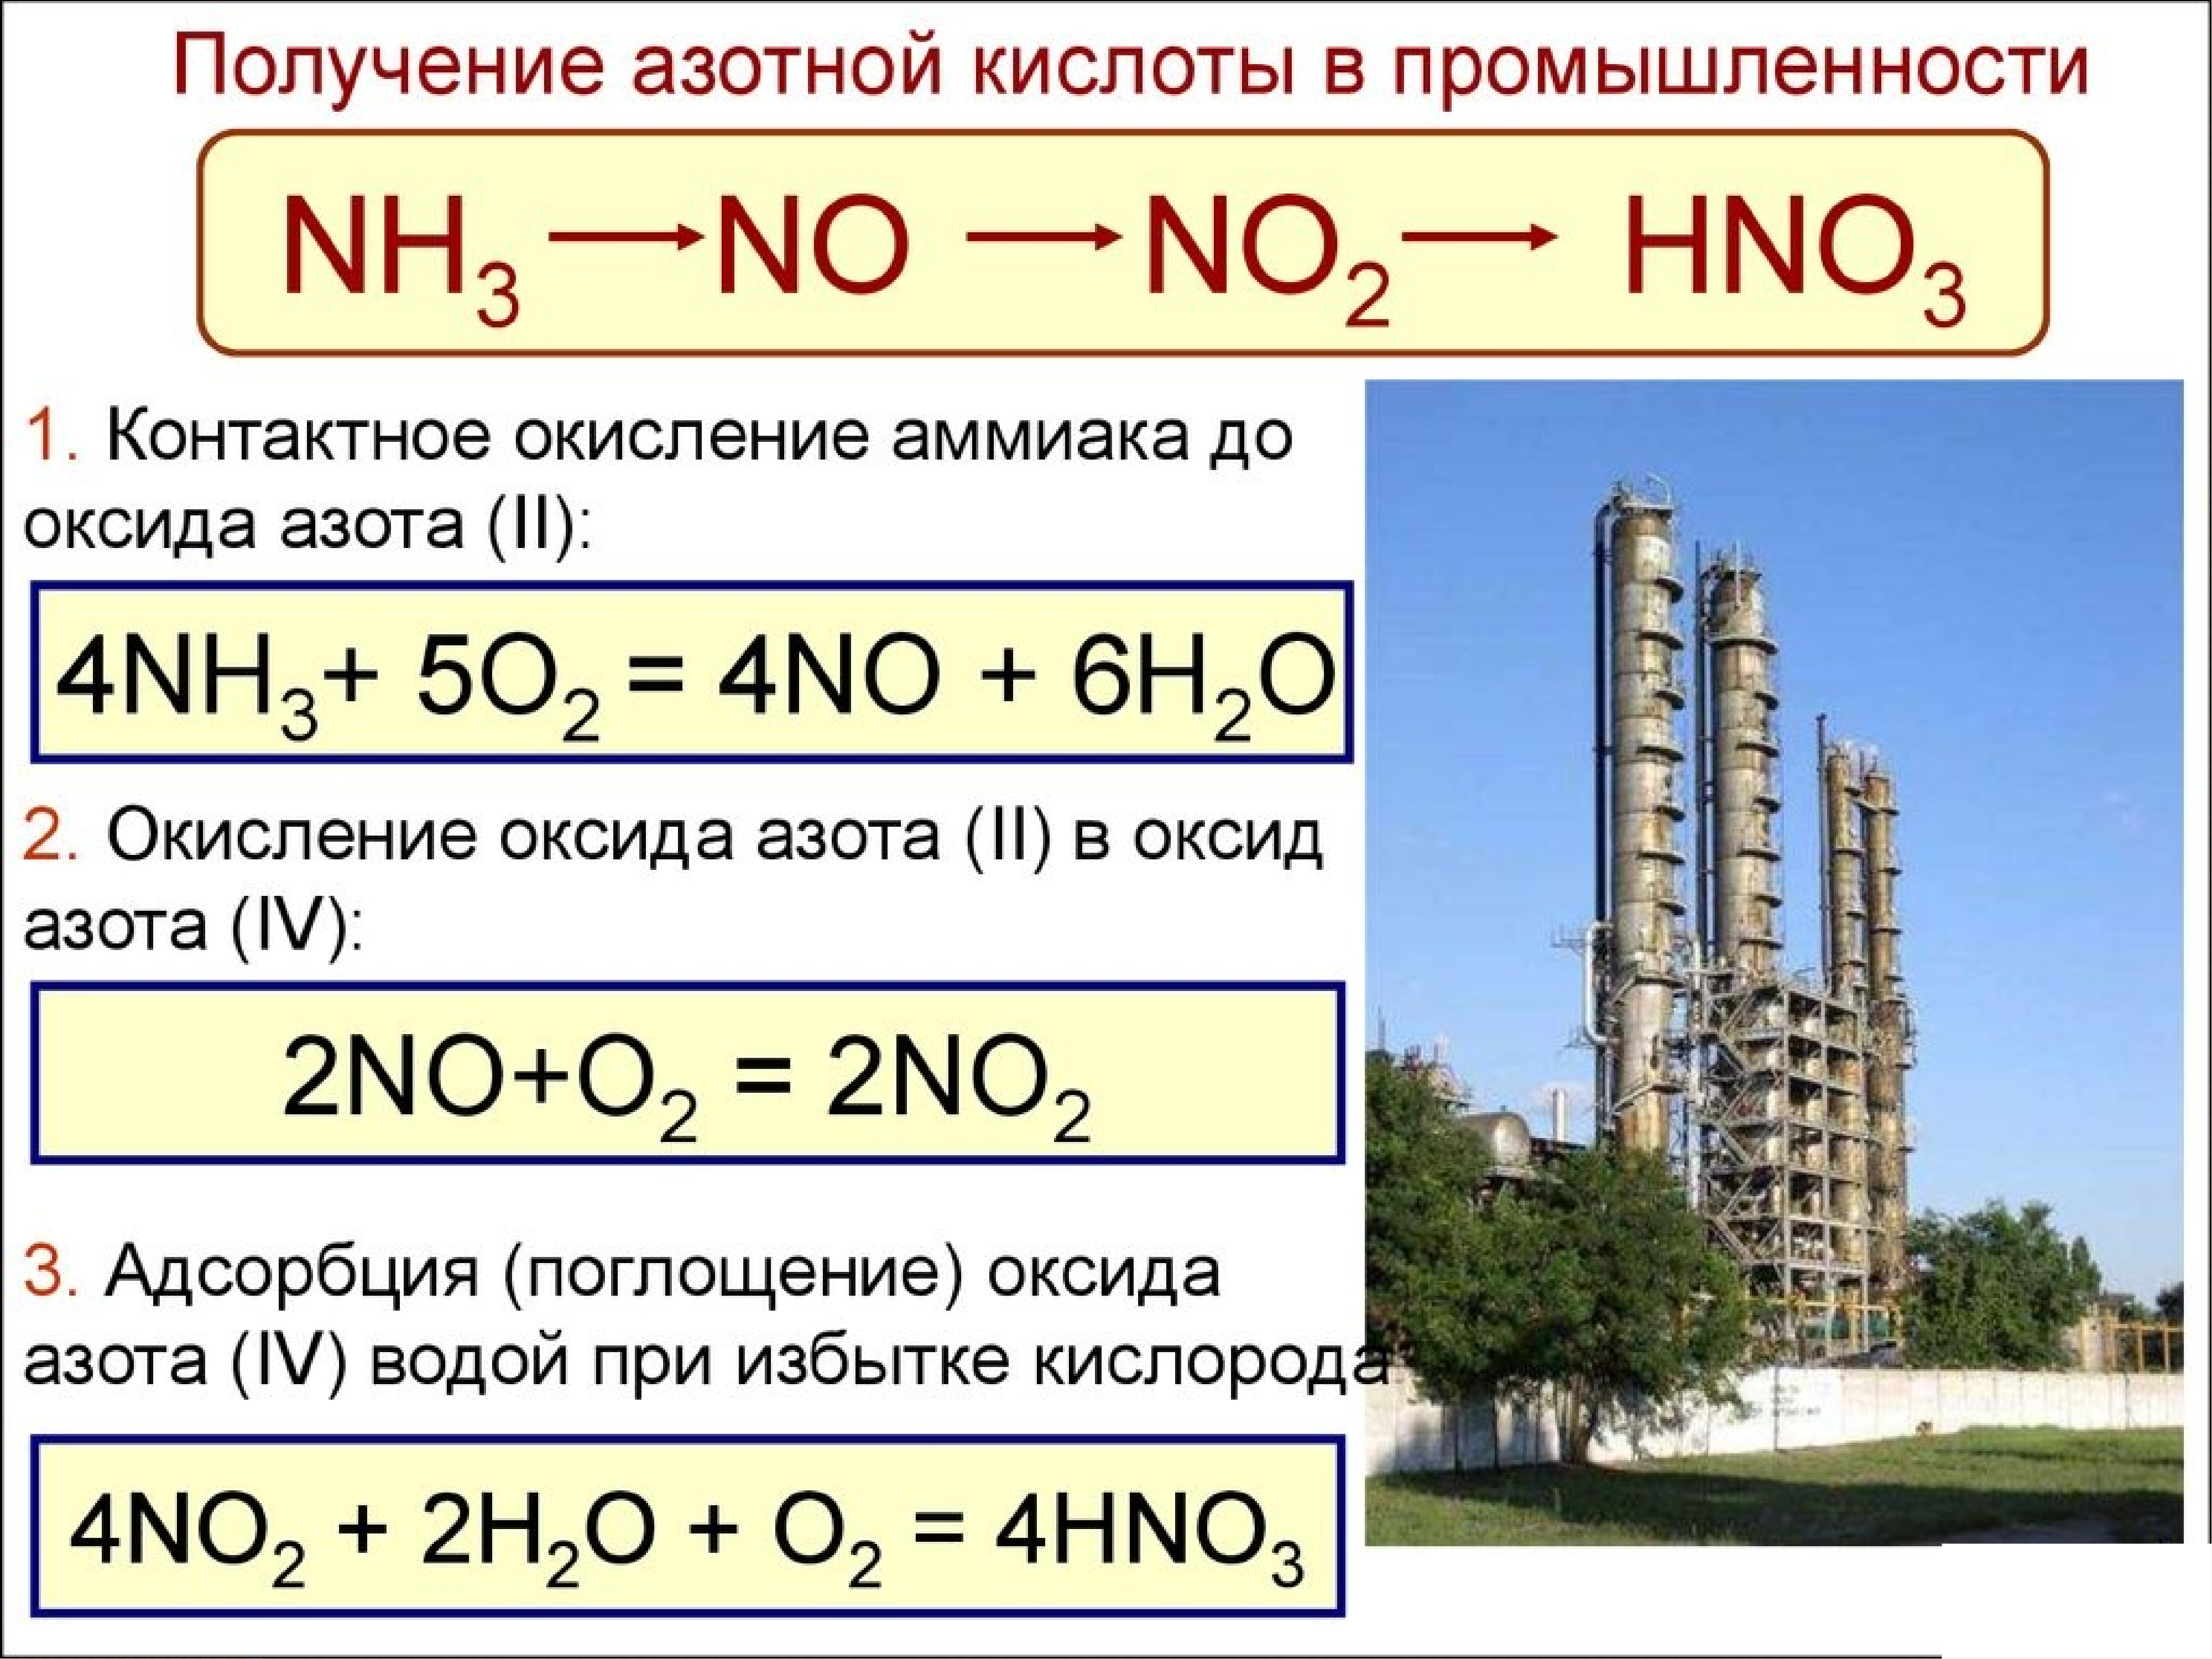 Оксид азота 4 молярная масса. Получение азотной кислоты из аммиака. Как из аммиака получить оксид азота 2. Как из аммиака получить азотную кислоту. Получение азотной кислоты из no2.